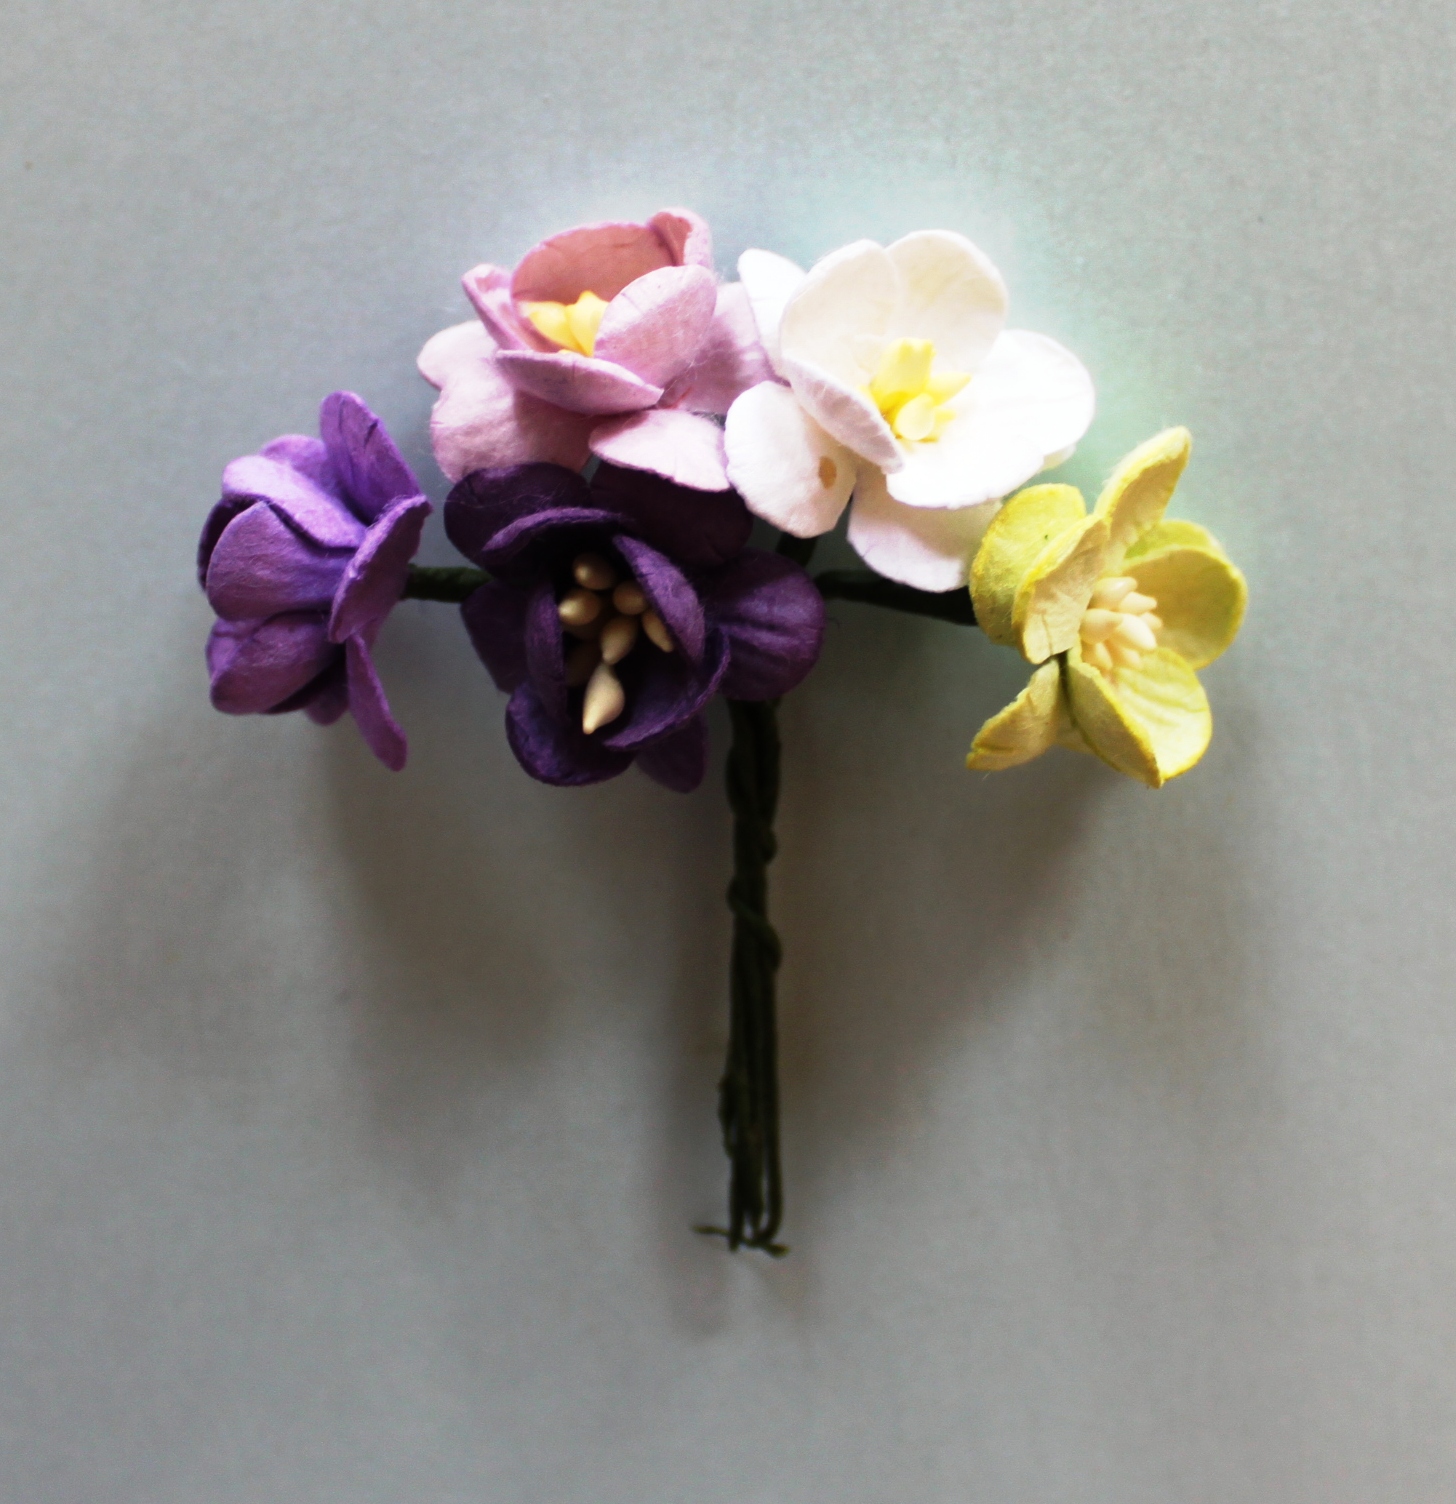 Набор  декоративных цветков вишни в разных тонах фиолетово-зелёного цвета 5 шт.